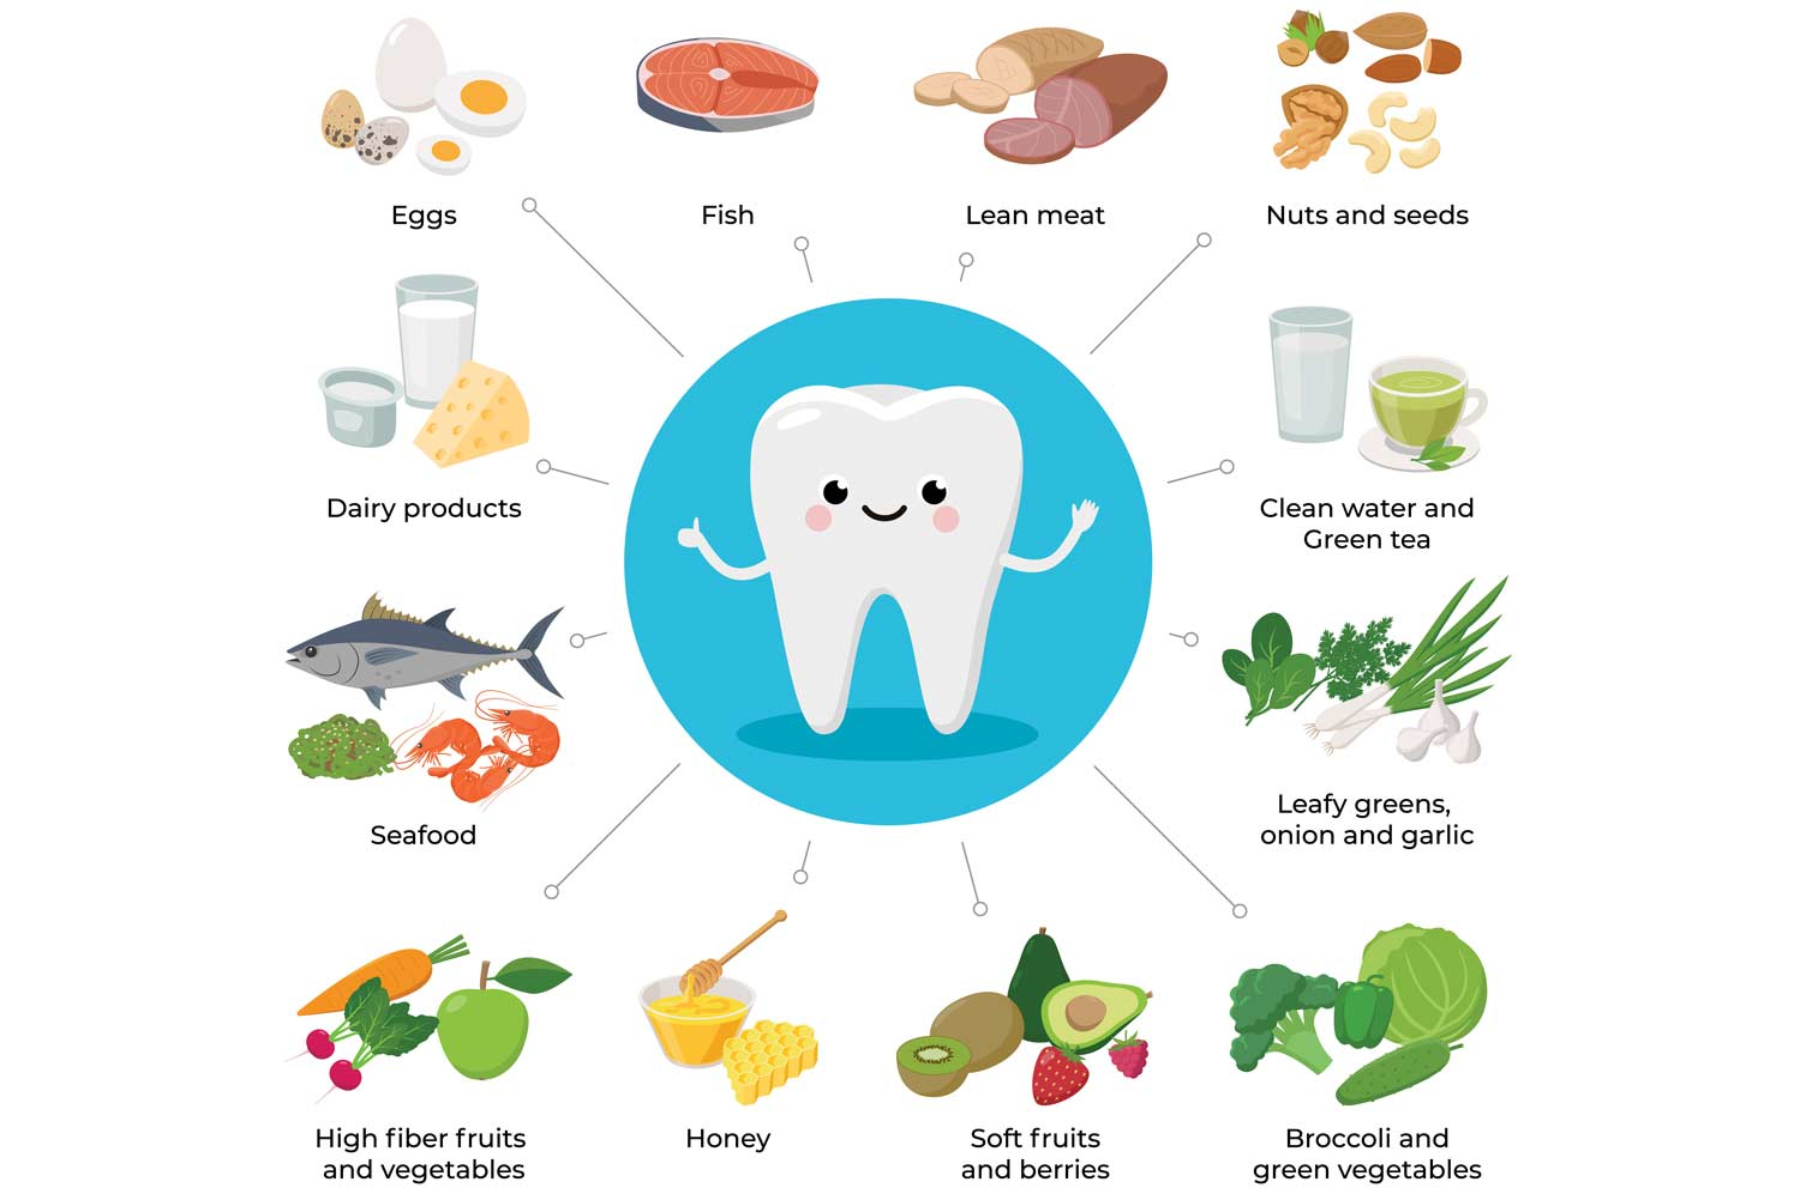 Δόντια τρόφιμα: Ποιες είναι οι τροφές που προστατευουν την υγεία των δοντιών;